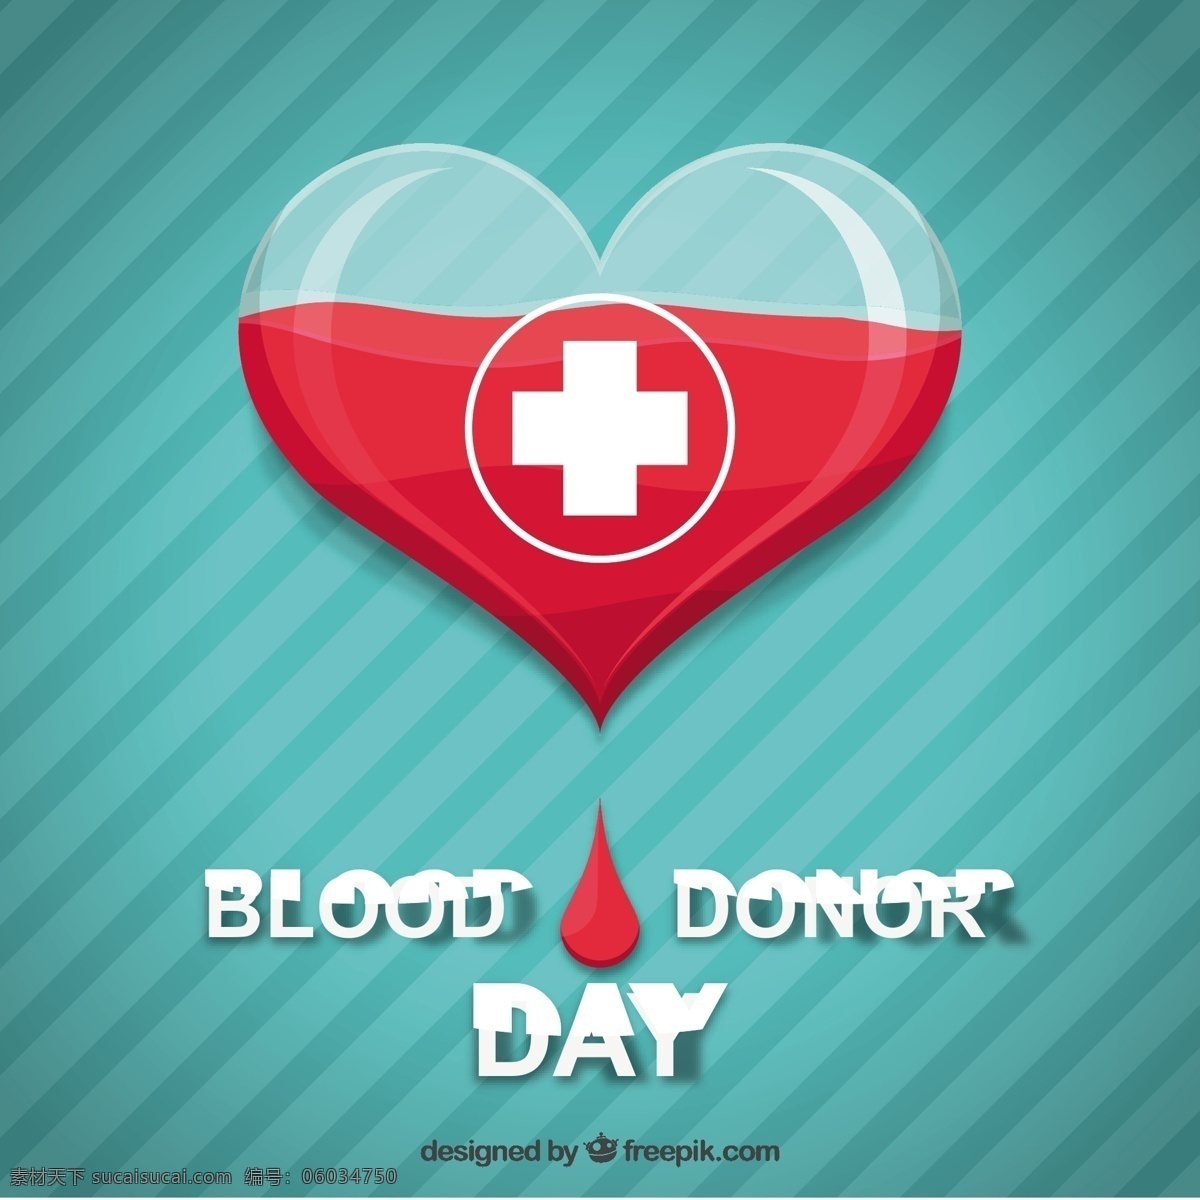 献血者 日 心脏 条纹 背景 献血者日 条纹背景